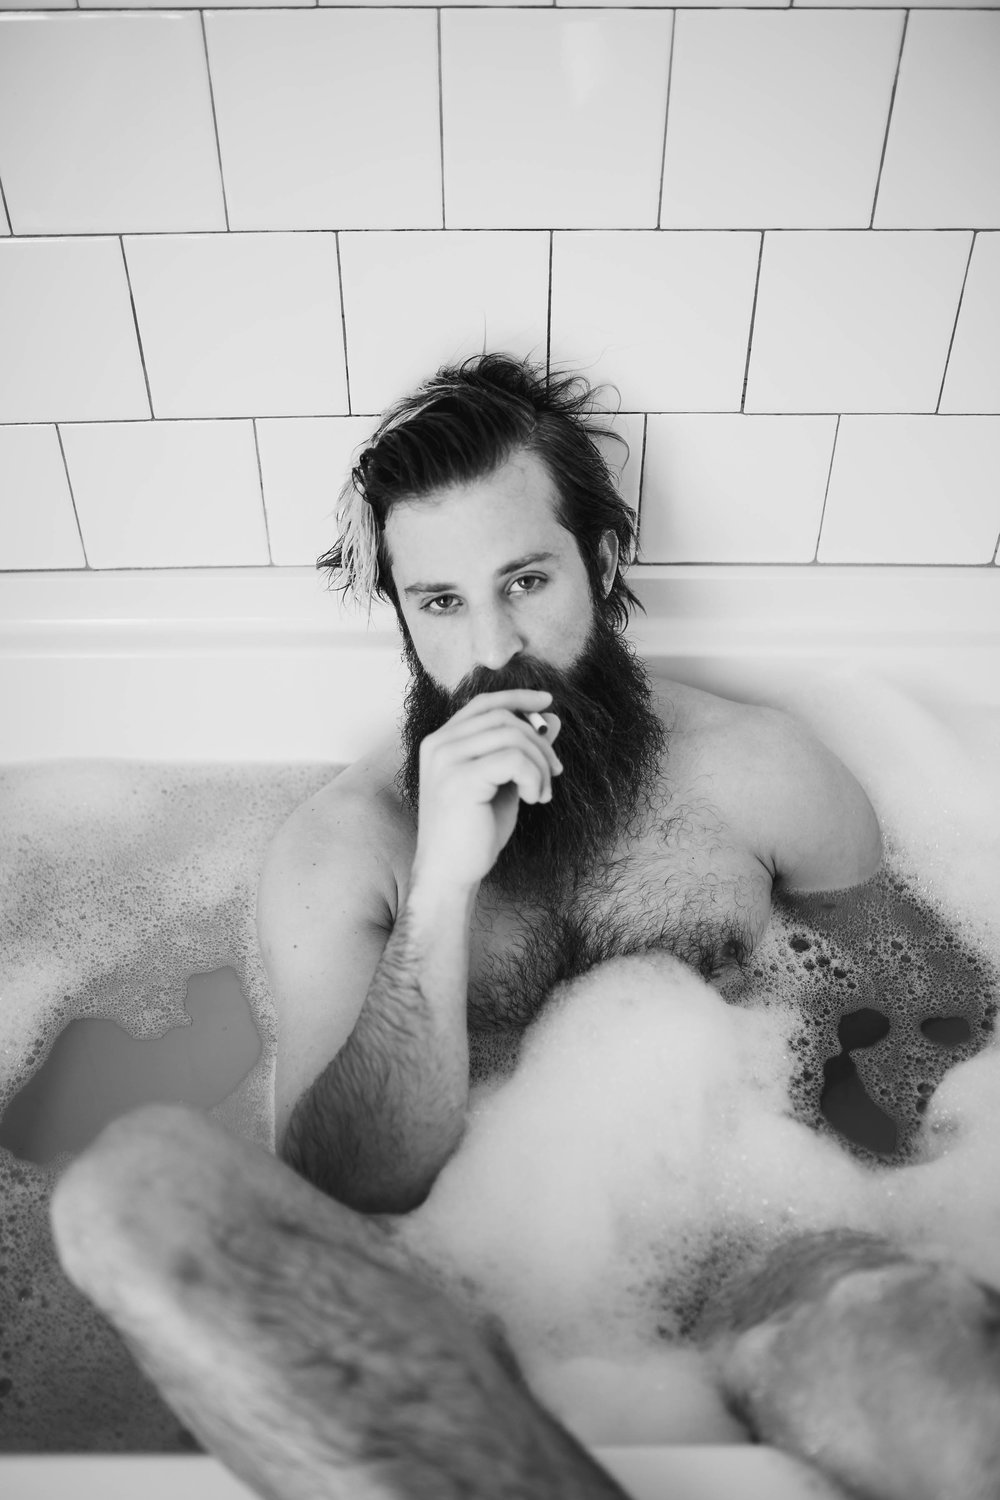 oklahoma boudoir photographer, okc boudoir photography, male boudoir, dudoir, sexy male photos, bathtub photos, bearded guy in bathtub, beard, hairy boy, cigarettes in bathtub, sexy